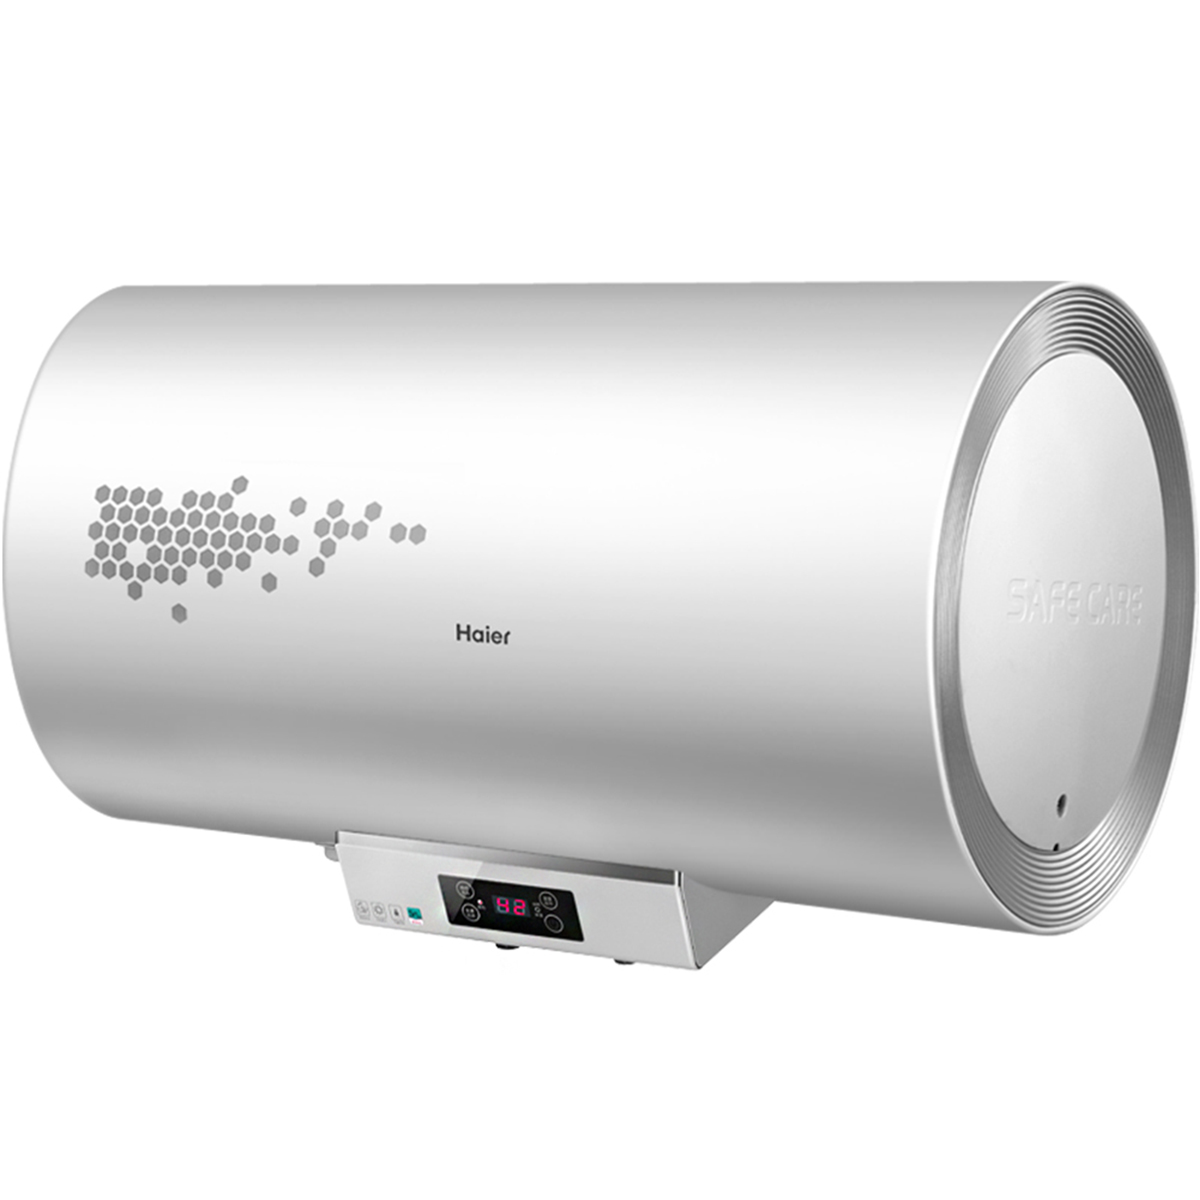 【美的F6032-TK2(HE)】美的电热水器,F6032-TK2(HE),官方报价_规格_参数_图片-美的商城